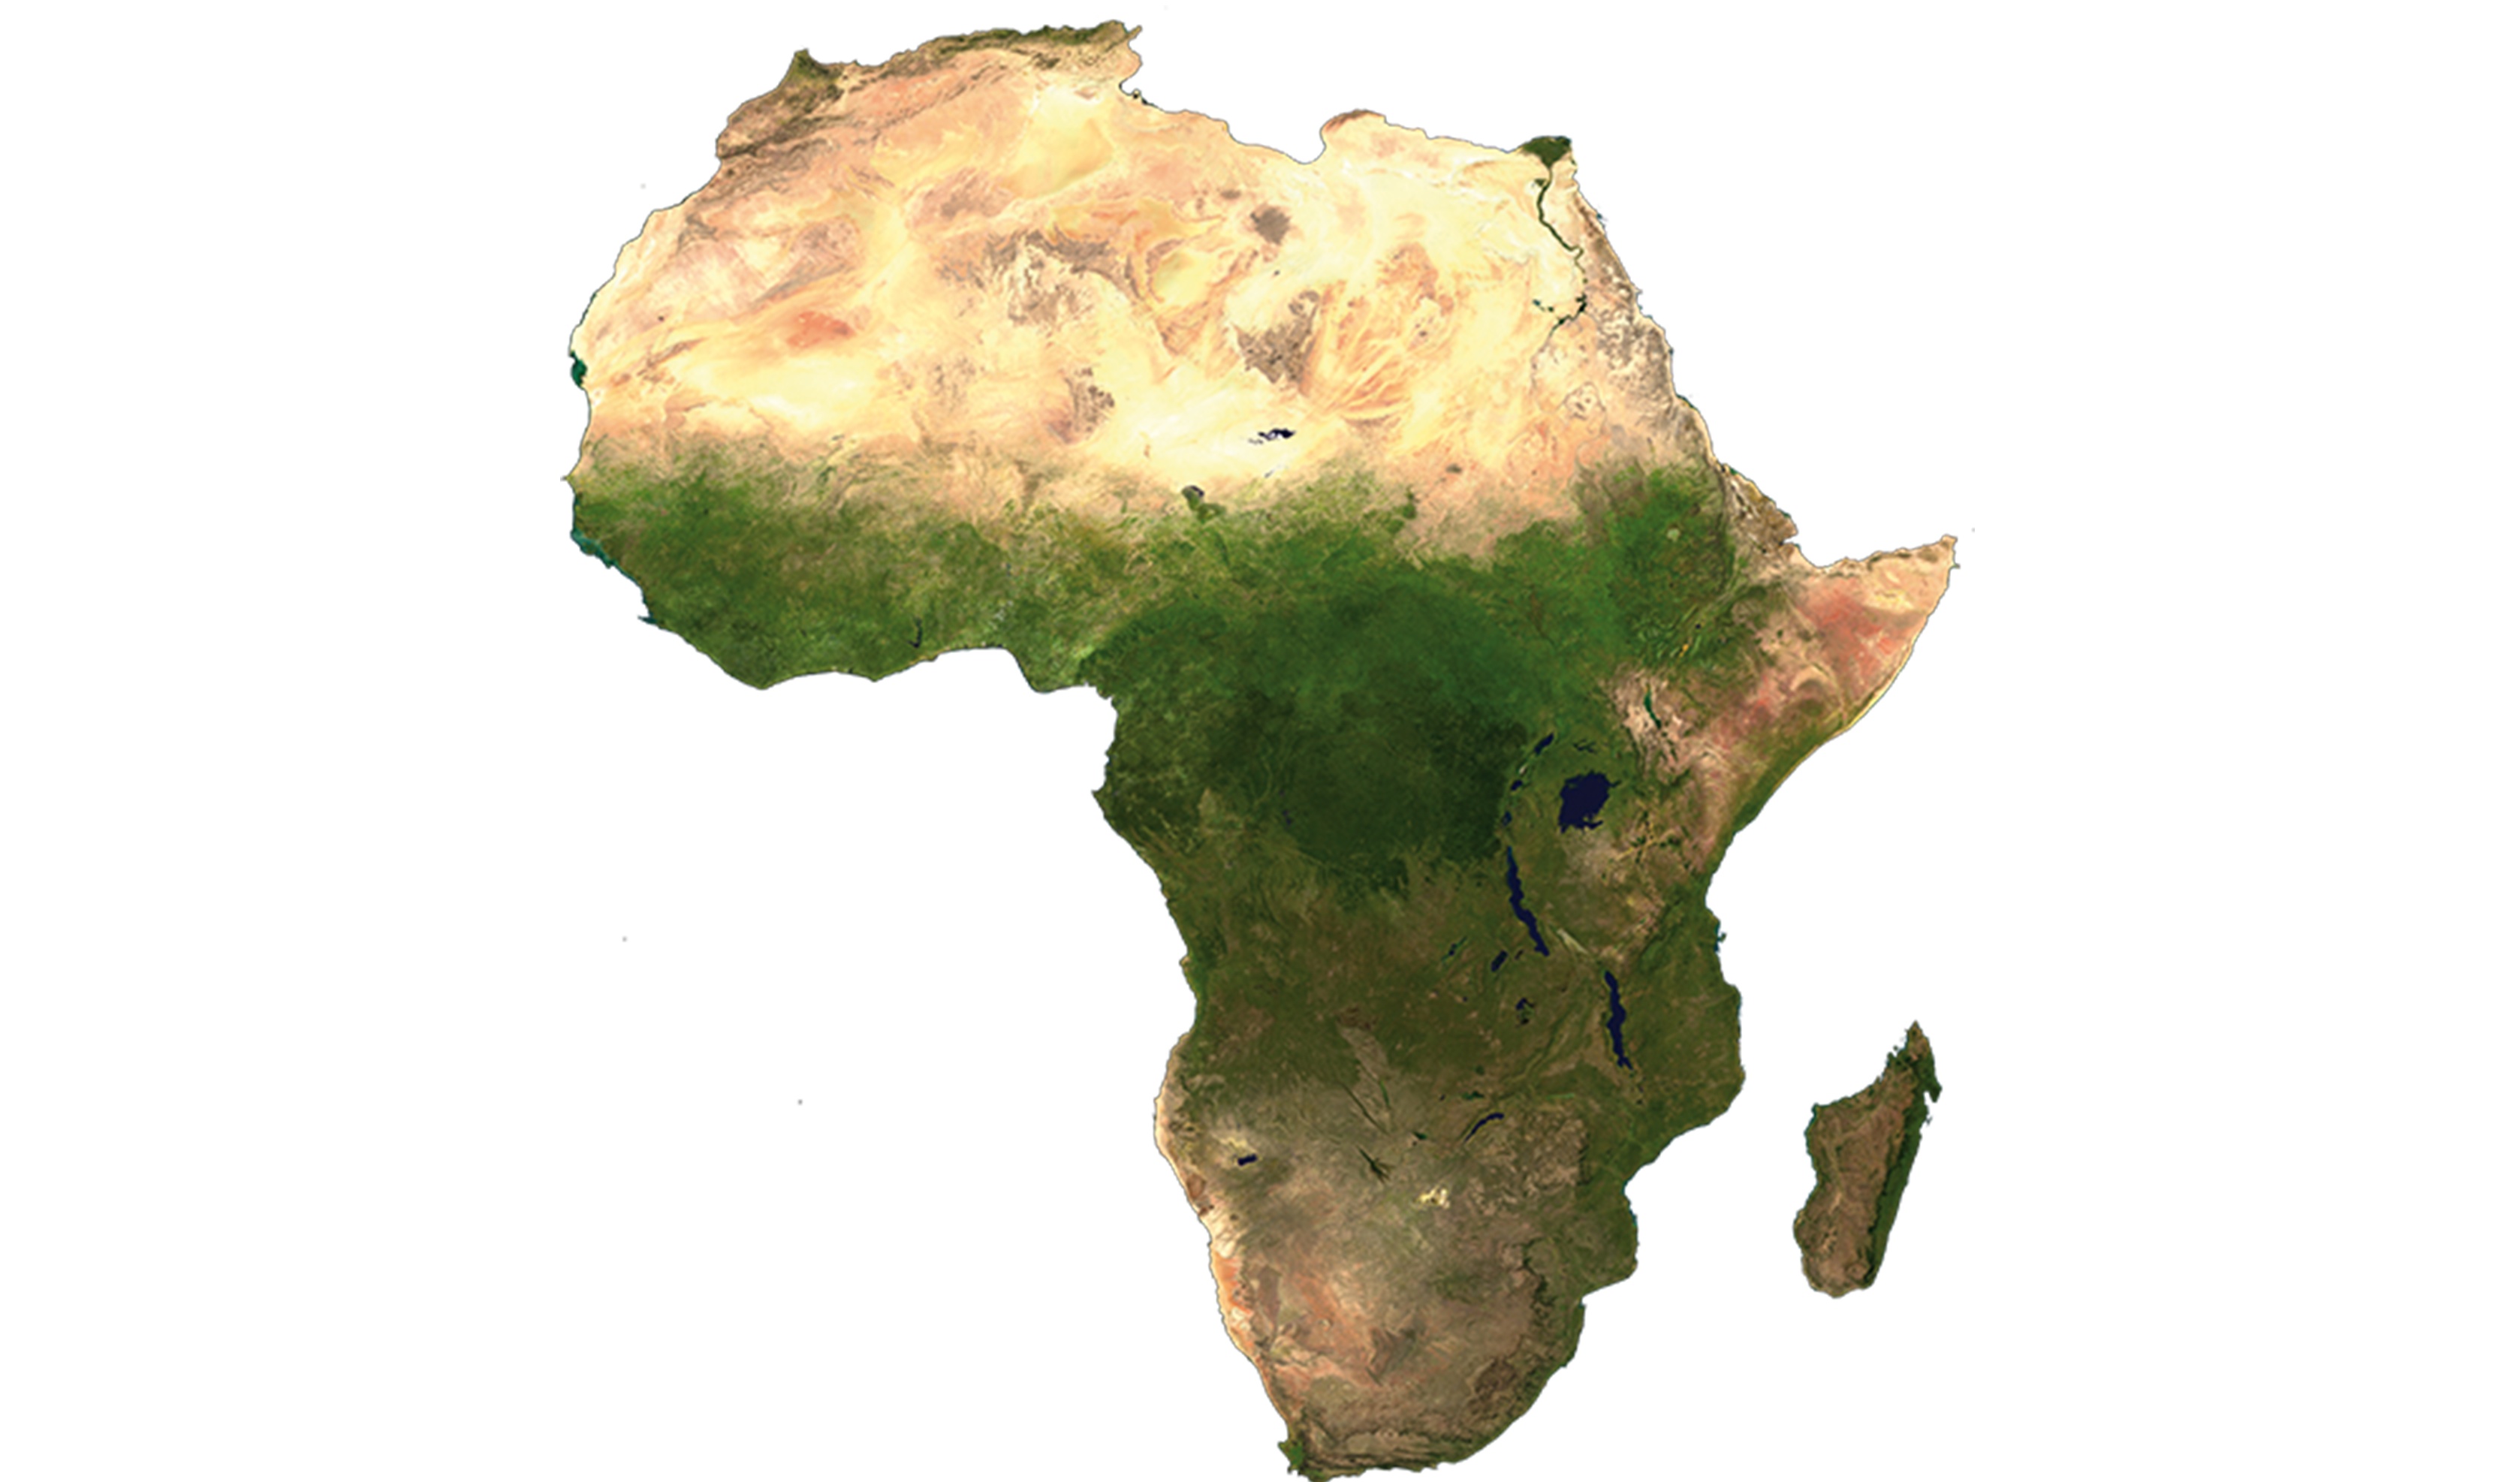 Afrika ist ein Kontinent mit einer erstaunlich ethnischen und biologischen Vielfalt.